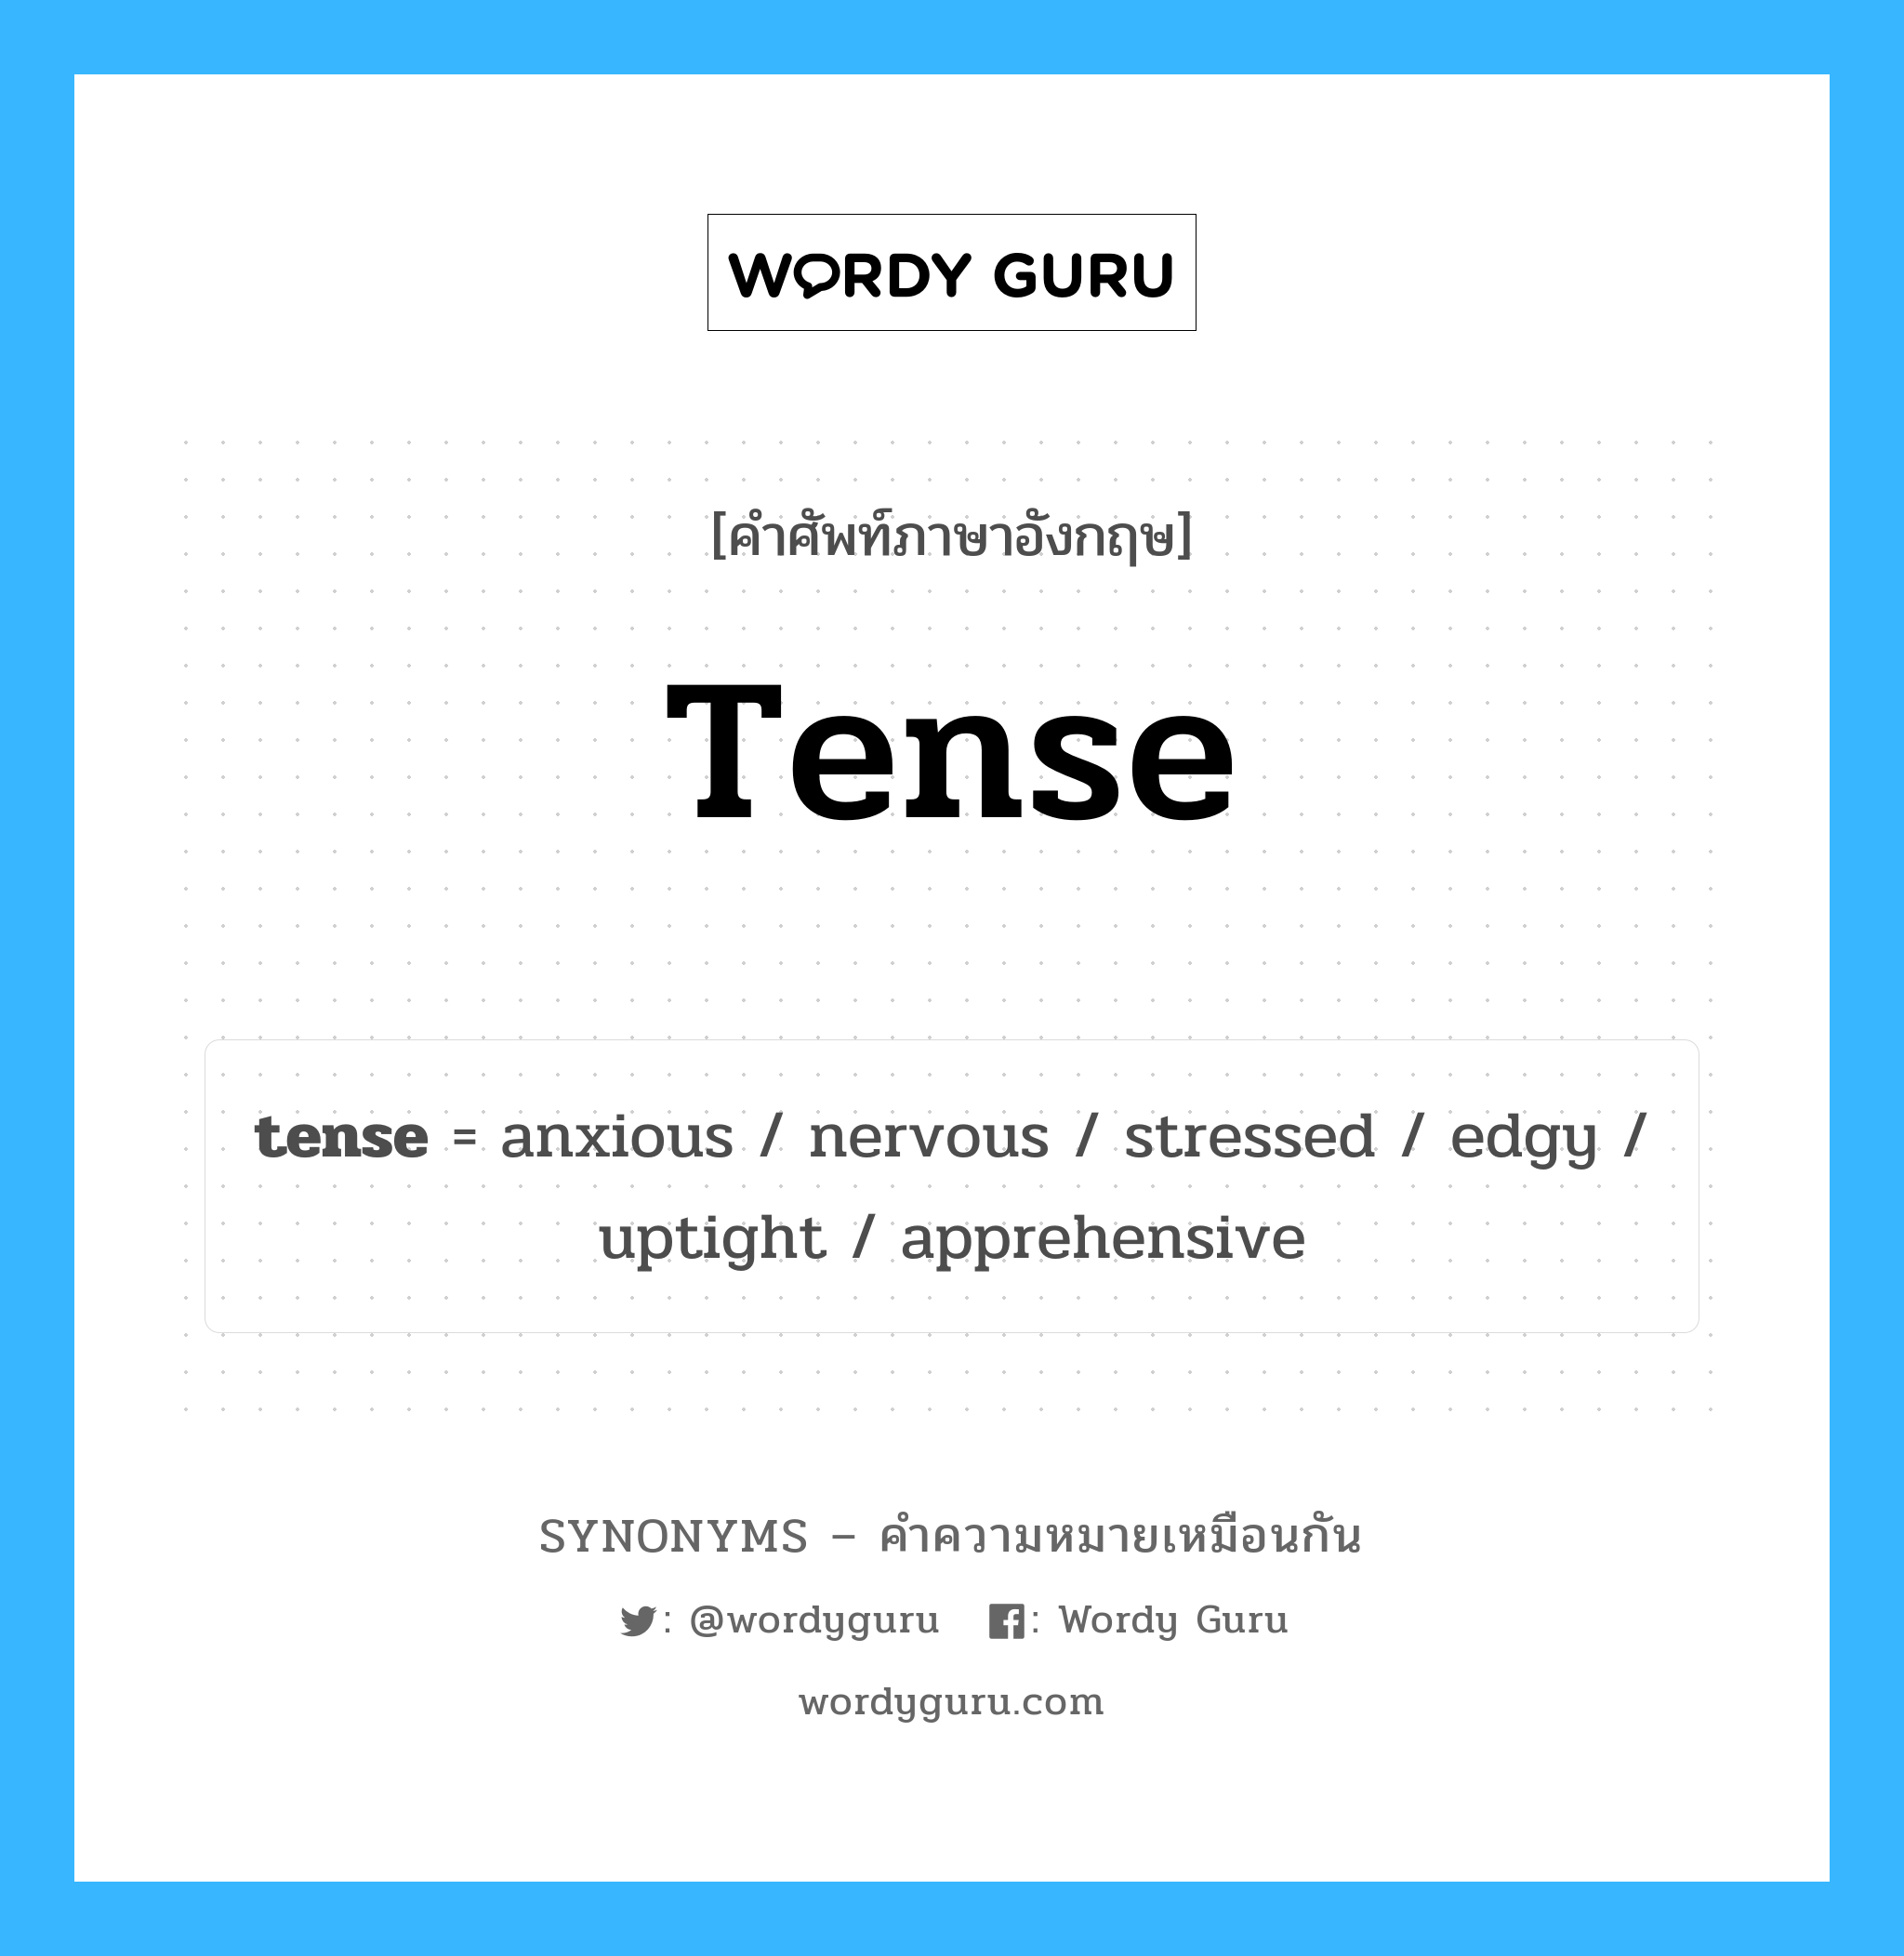 edgy เป็นหนึ่งใน tense และมีคำอื่น ๆ อีกดังนี้, คำศัพท์ภาษาอังกฤษ edgy ความหมายคล้ายกันกับ tense แปลว่า หงุดหงิด หมวด tense